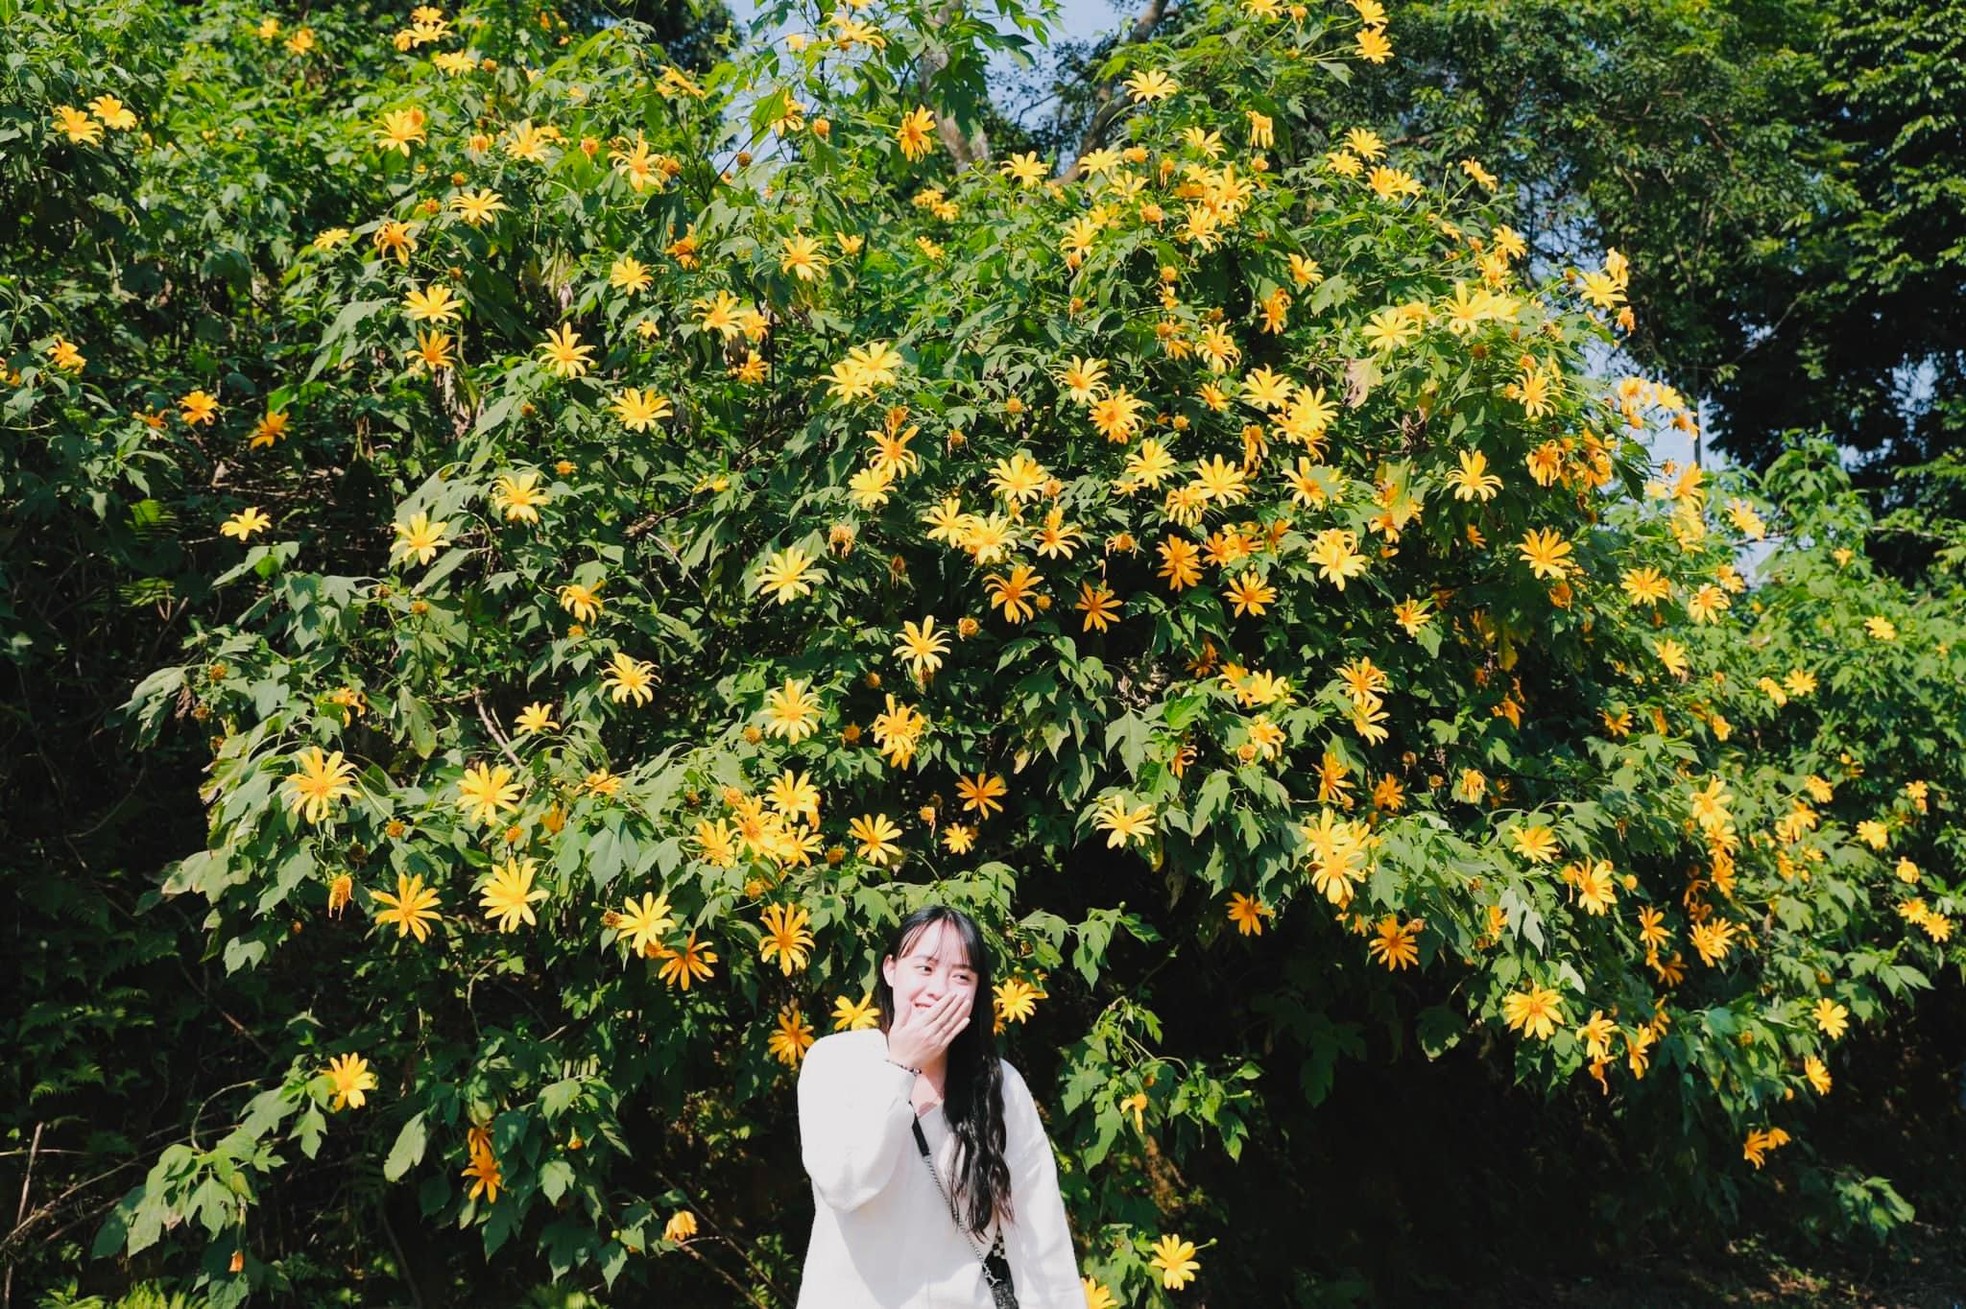 Hoa dã quỳ vàng rực đẹp mê hồn ở Vườn quốc gia Ba Vì ảnh 2